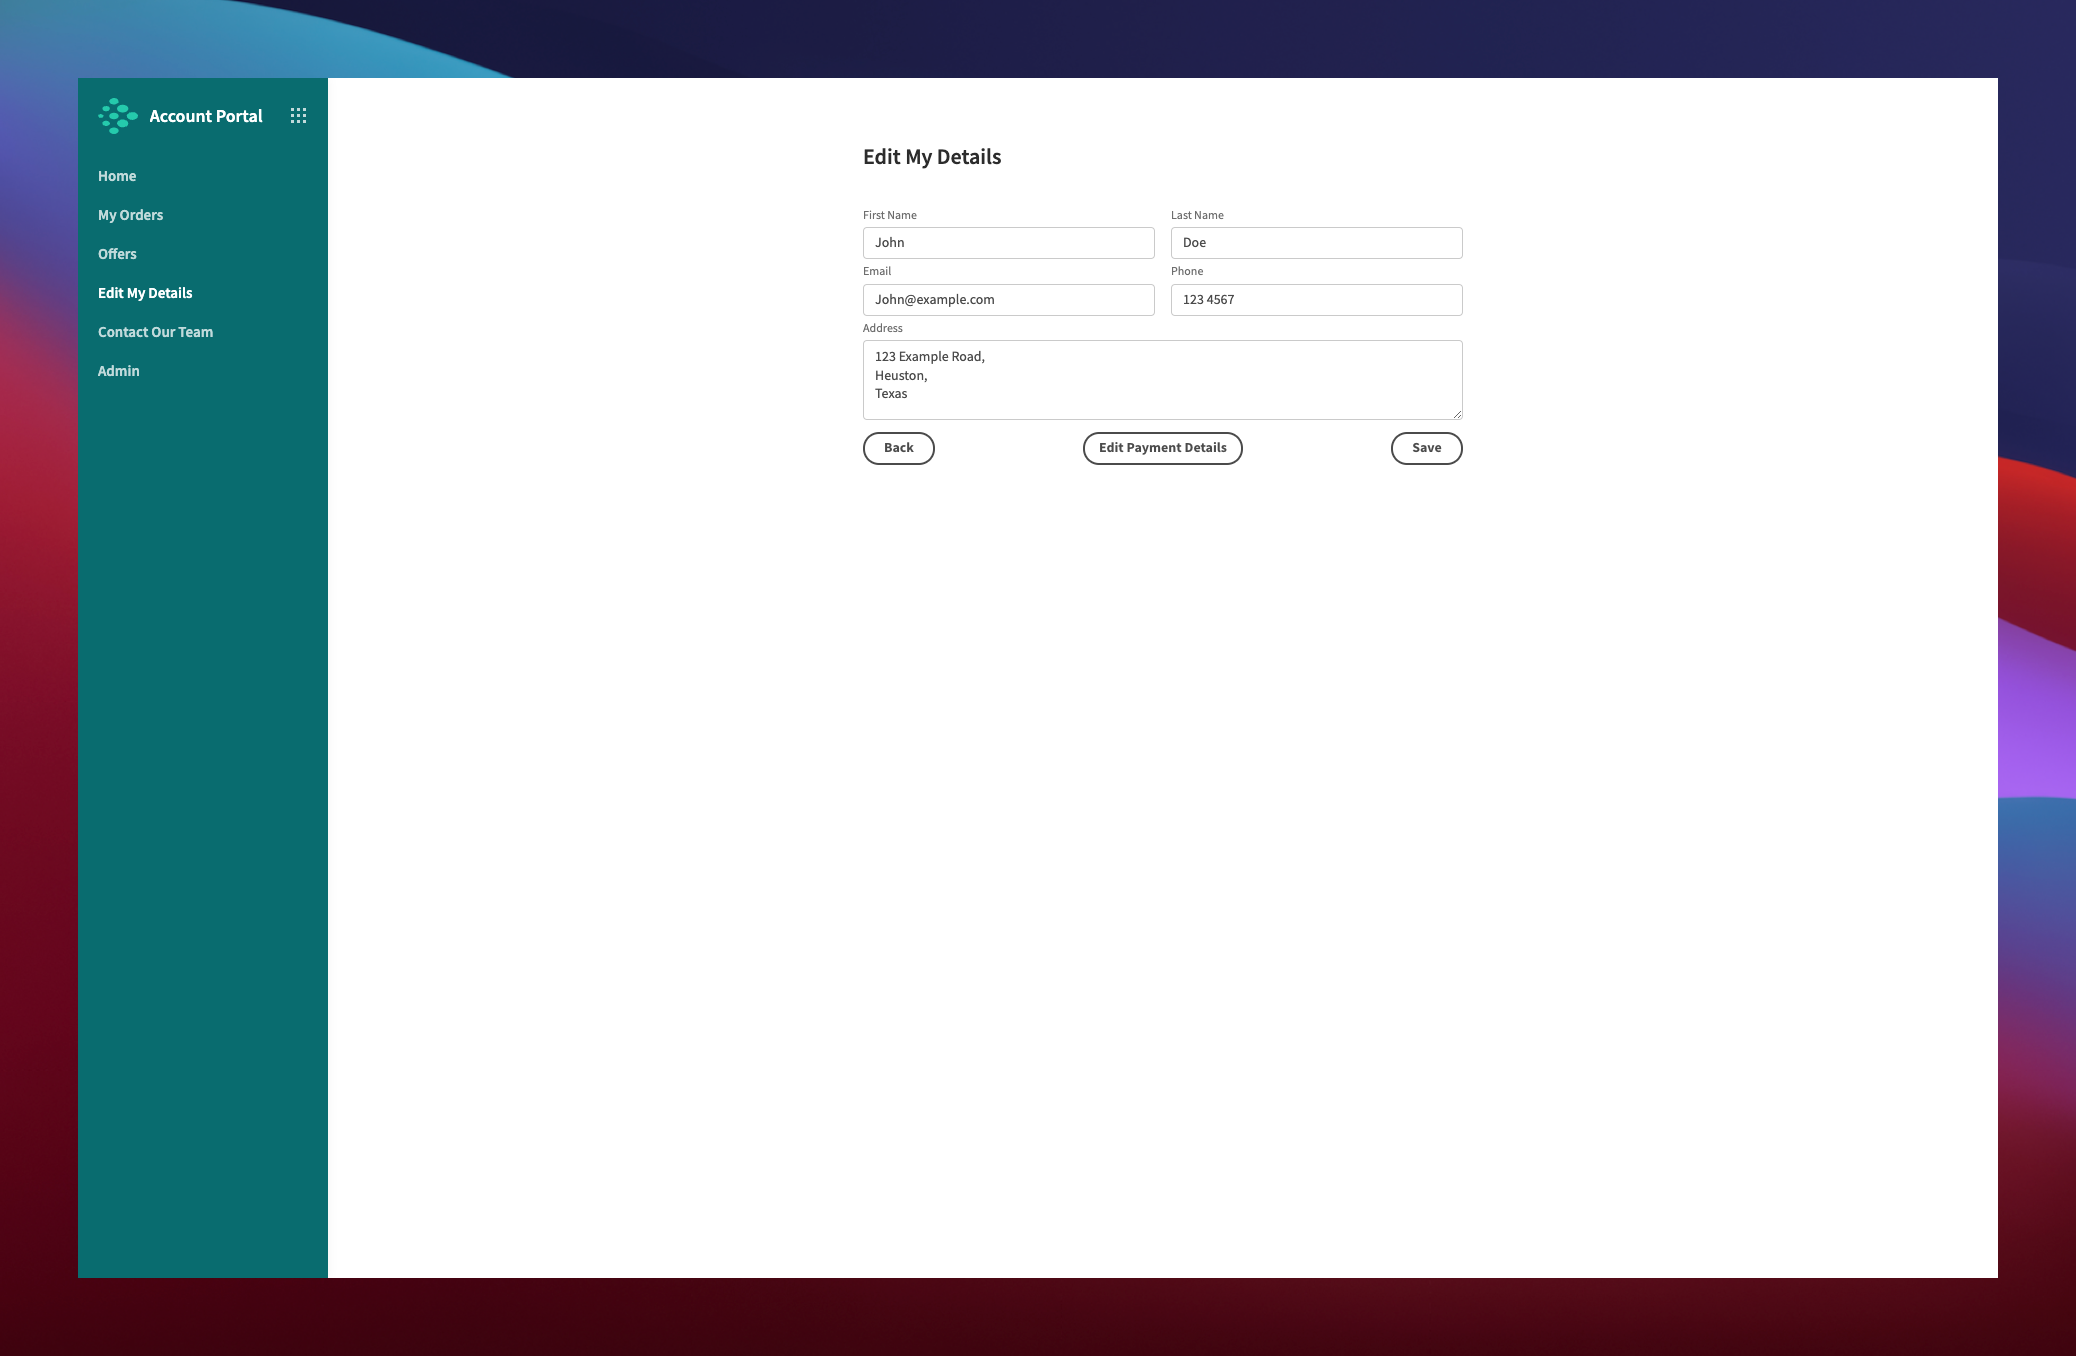 Customer Account Portal Edit Details Screen